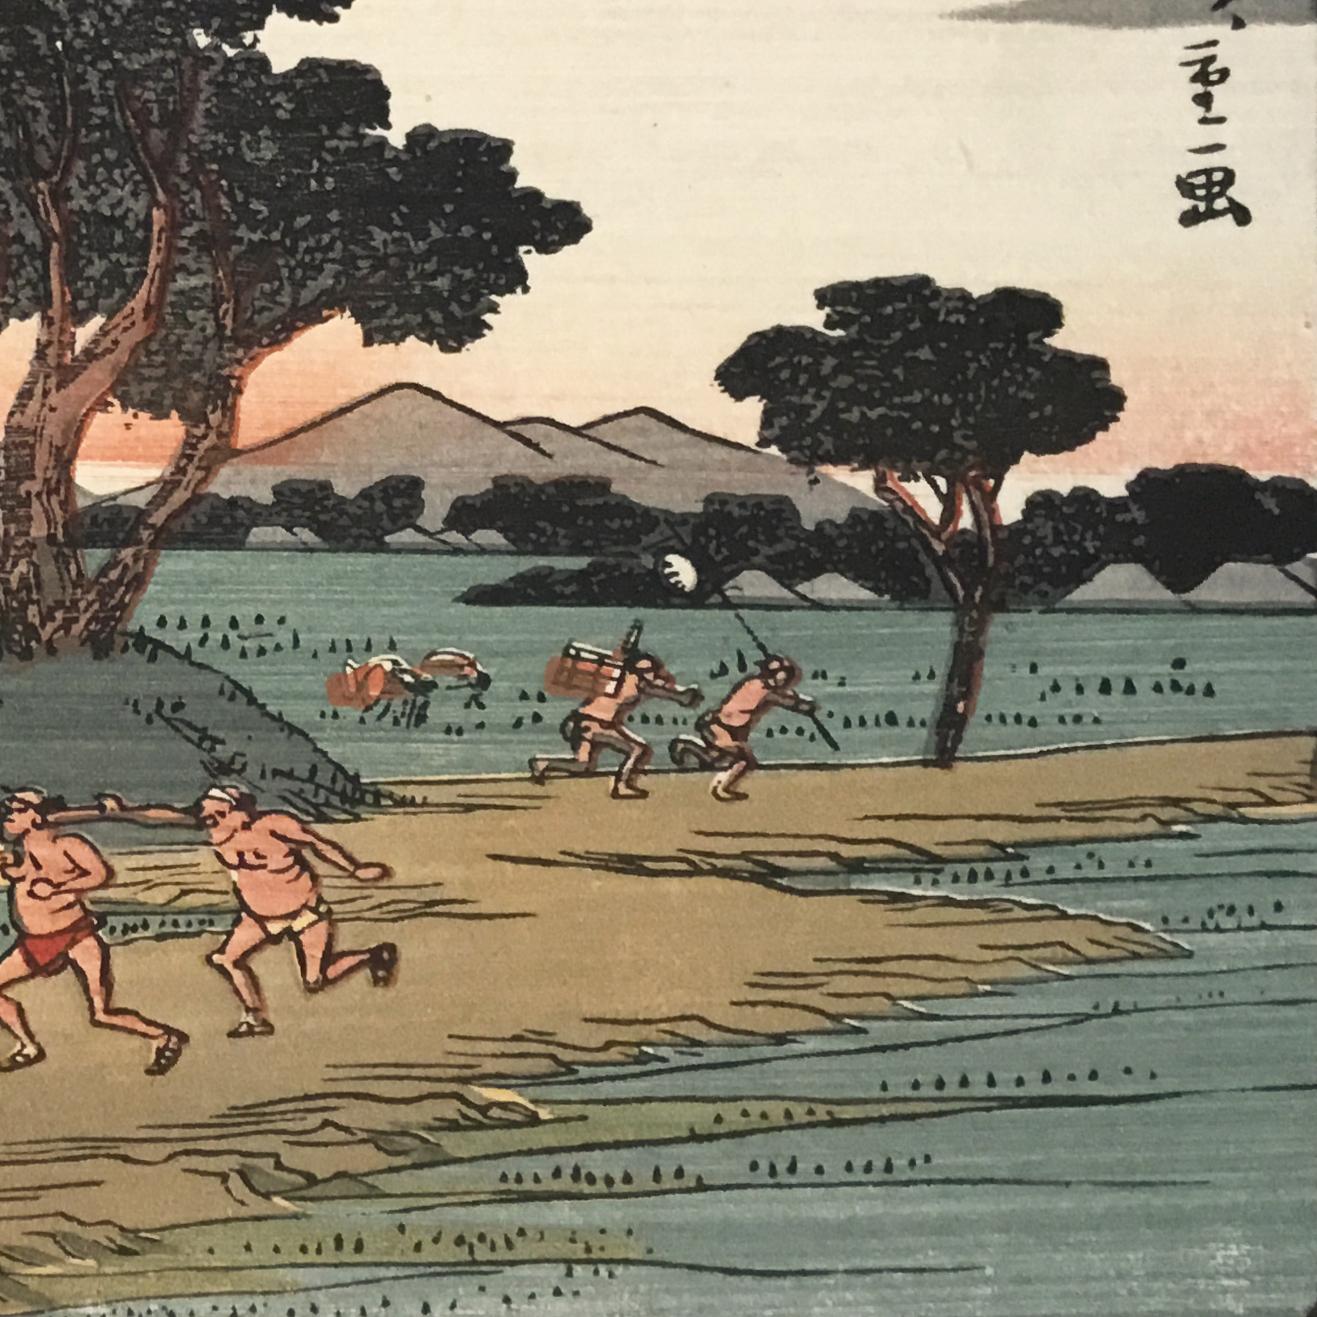 Eine Tusche auf Papier, Nishiki-e- und Yoko-e-Holzschnitt-Landschaft mit einer Ansicht von Reisenden in Shono, um 1850. Neben dem Weg zeichnet sich eine Baumgruppe gegen einen warmen Himmel ab. Oben rechts in Kanji signiert 